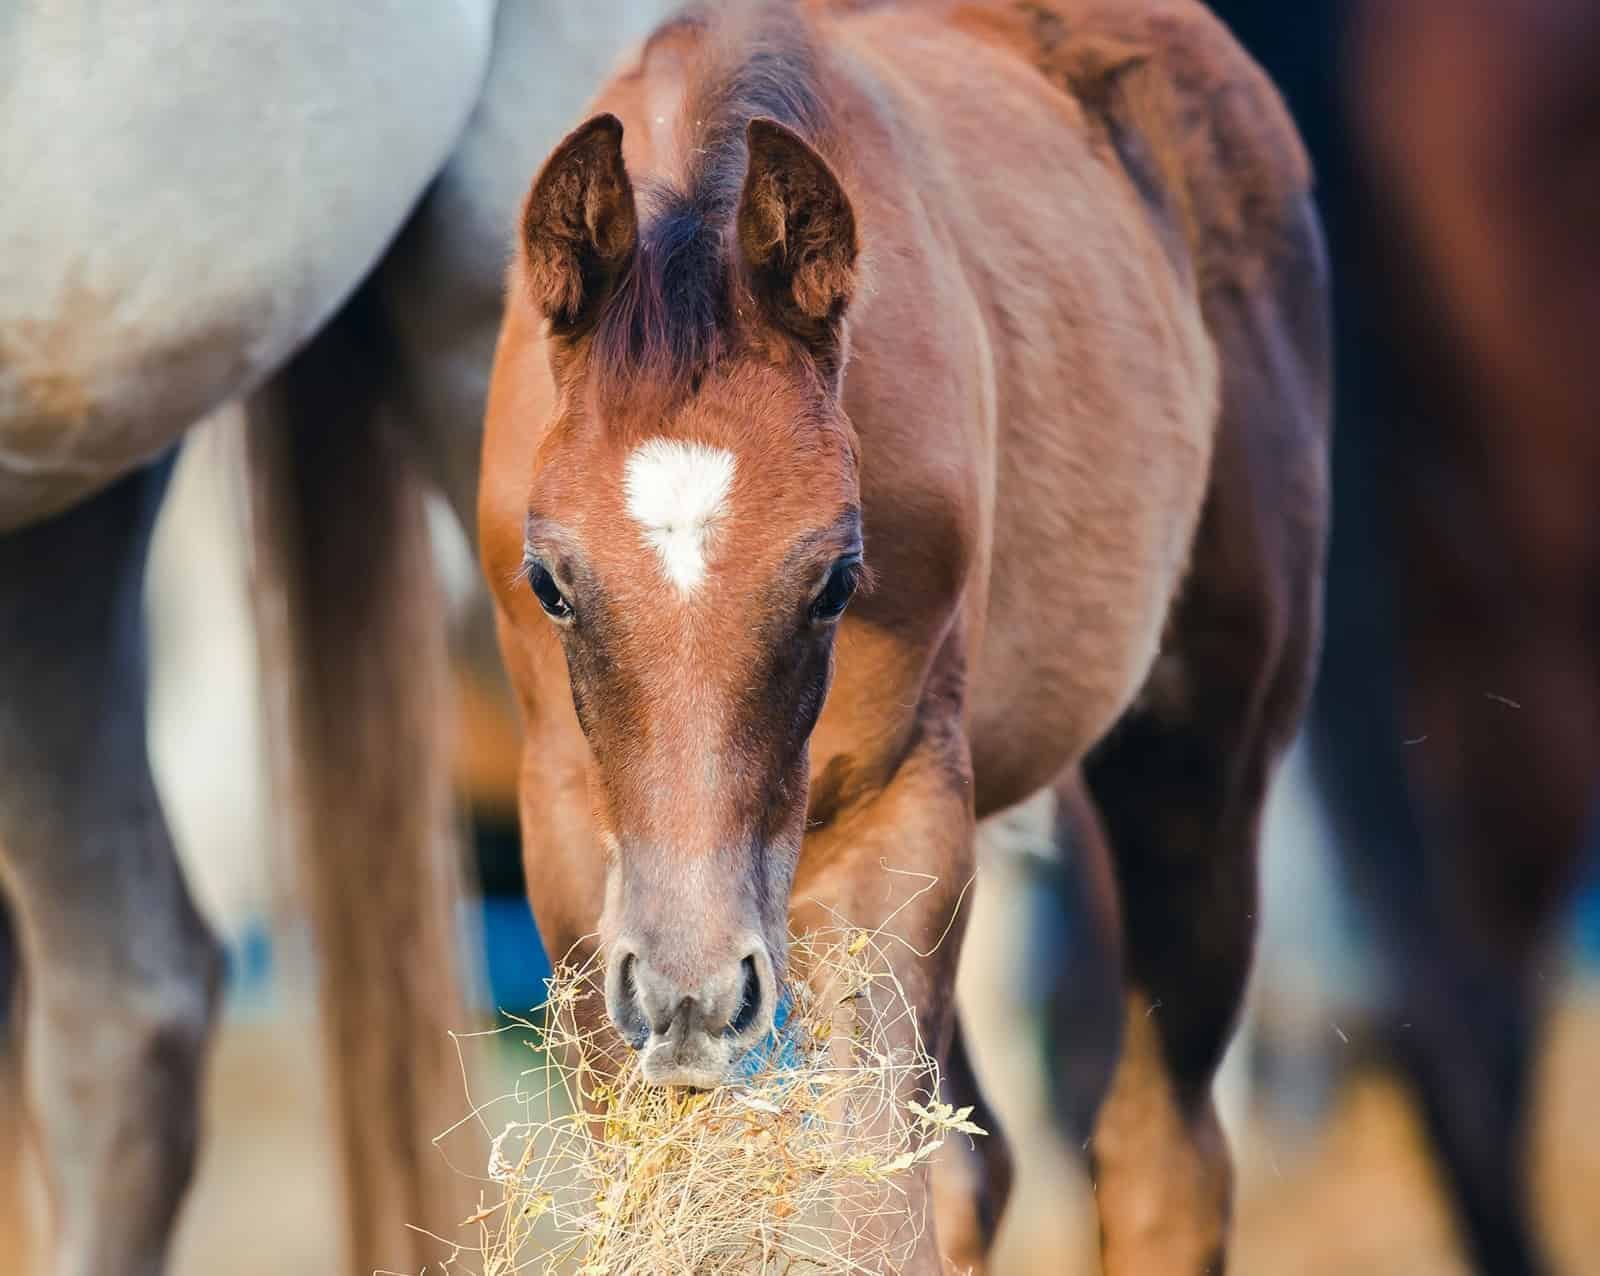 bay-foal-eating-hay.jpg